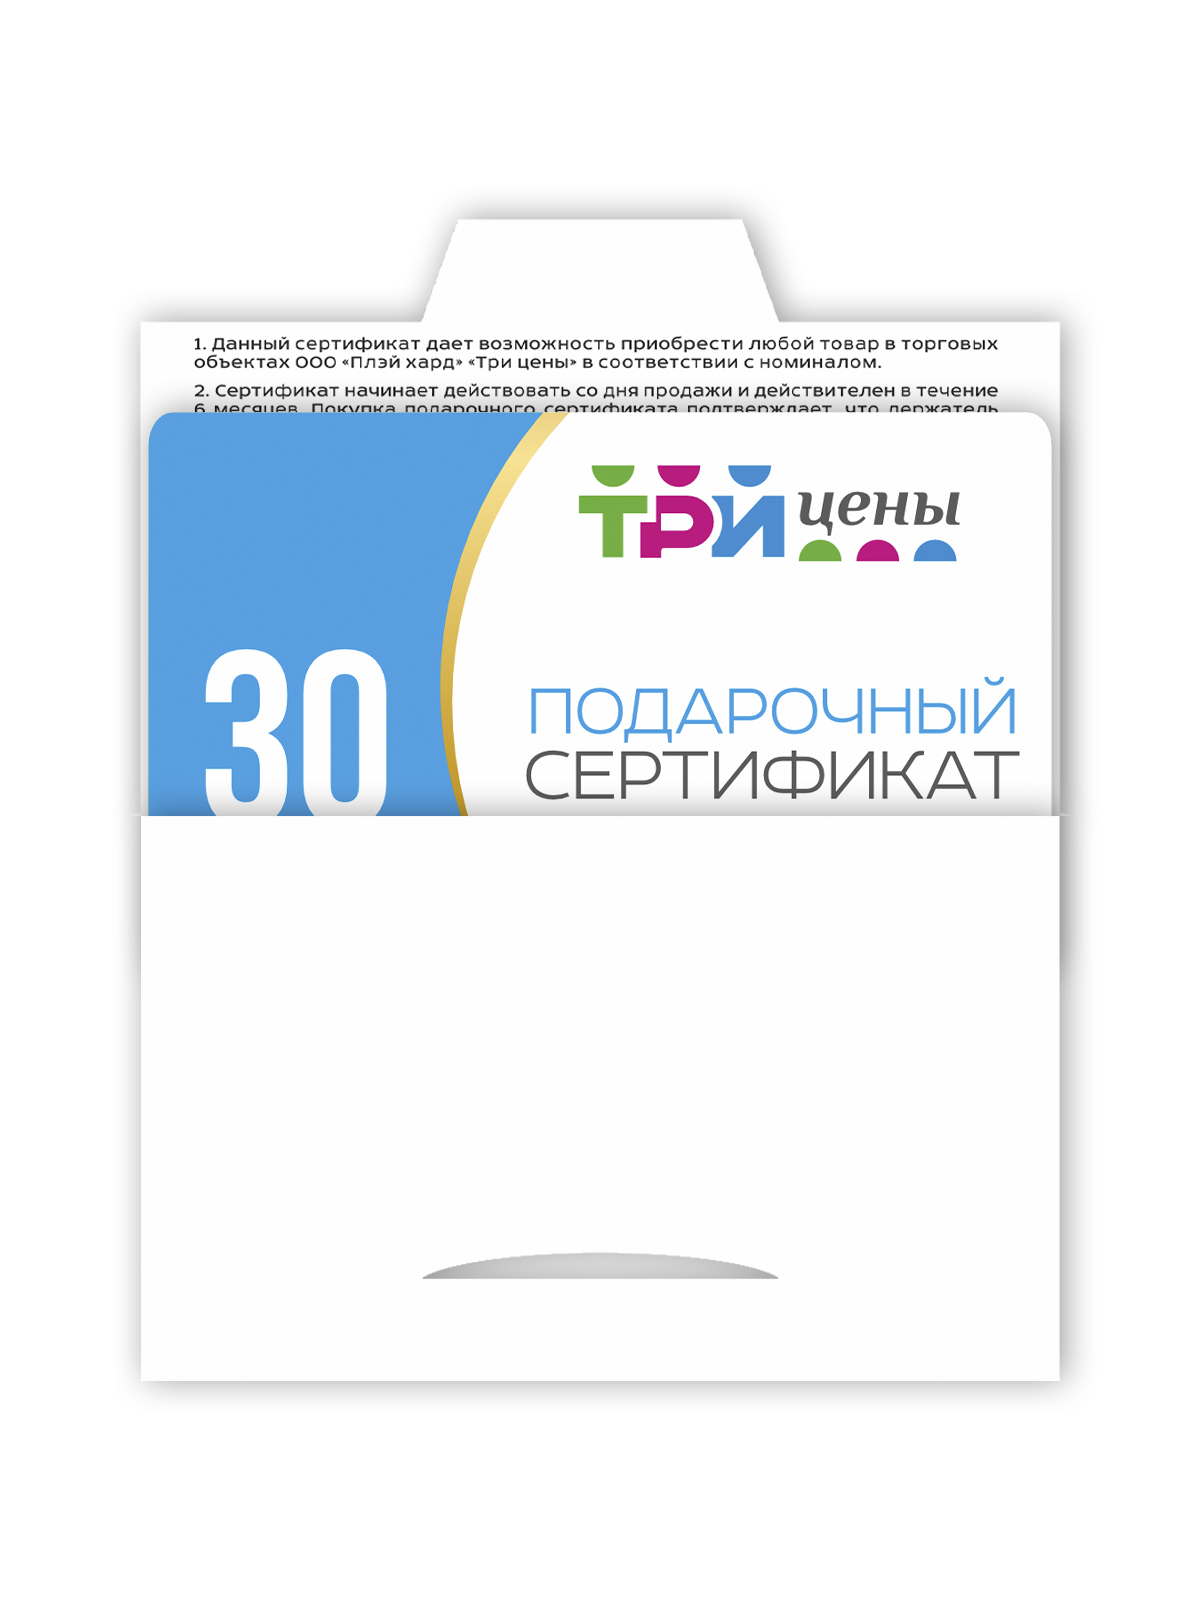 Подарочный сертификат на сумму 30 рублей